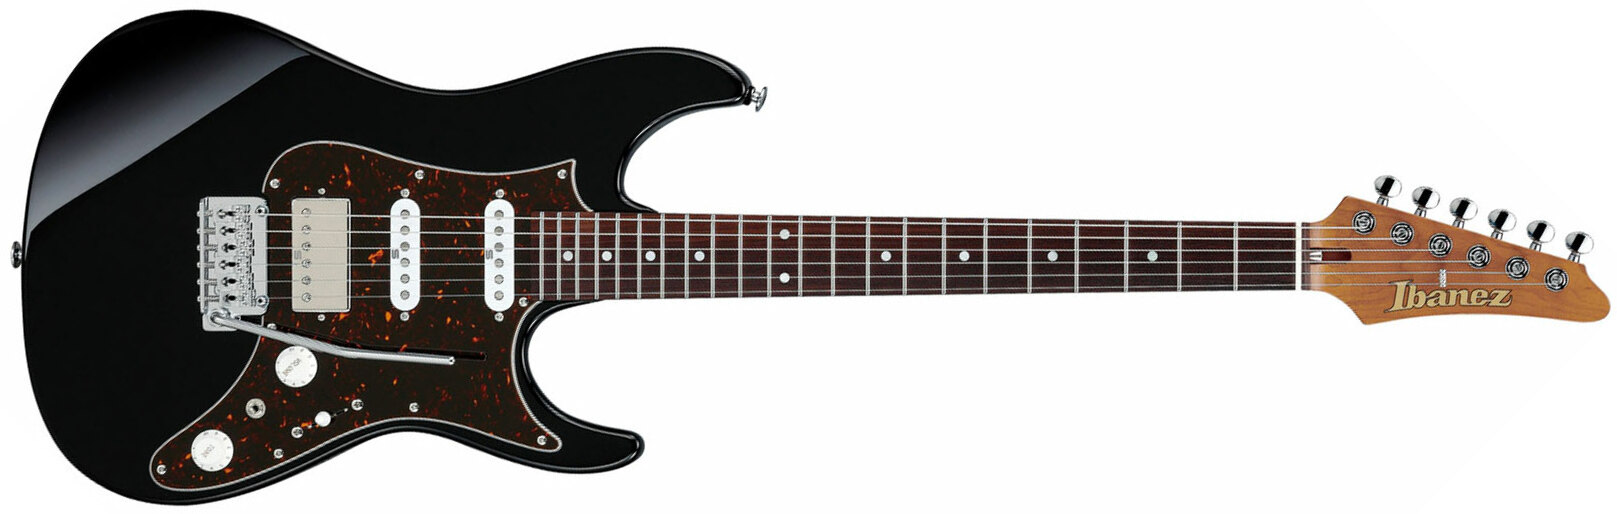 Ibanez Az2204b Bk Prestige Jap Hss Seymour Duncan Trem Mn - Black - Str shape electric guitar - Main picture